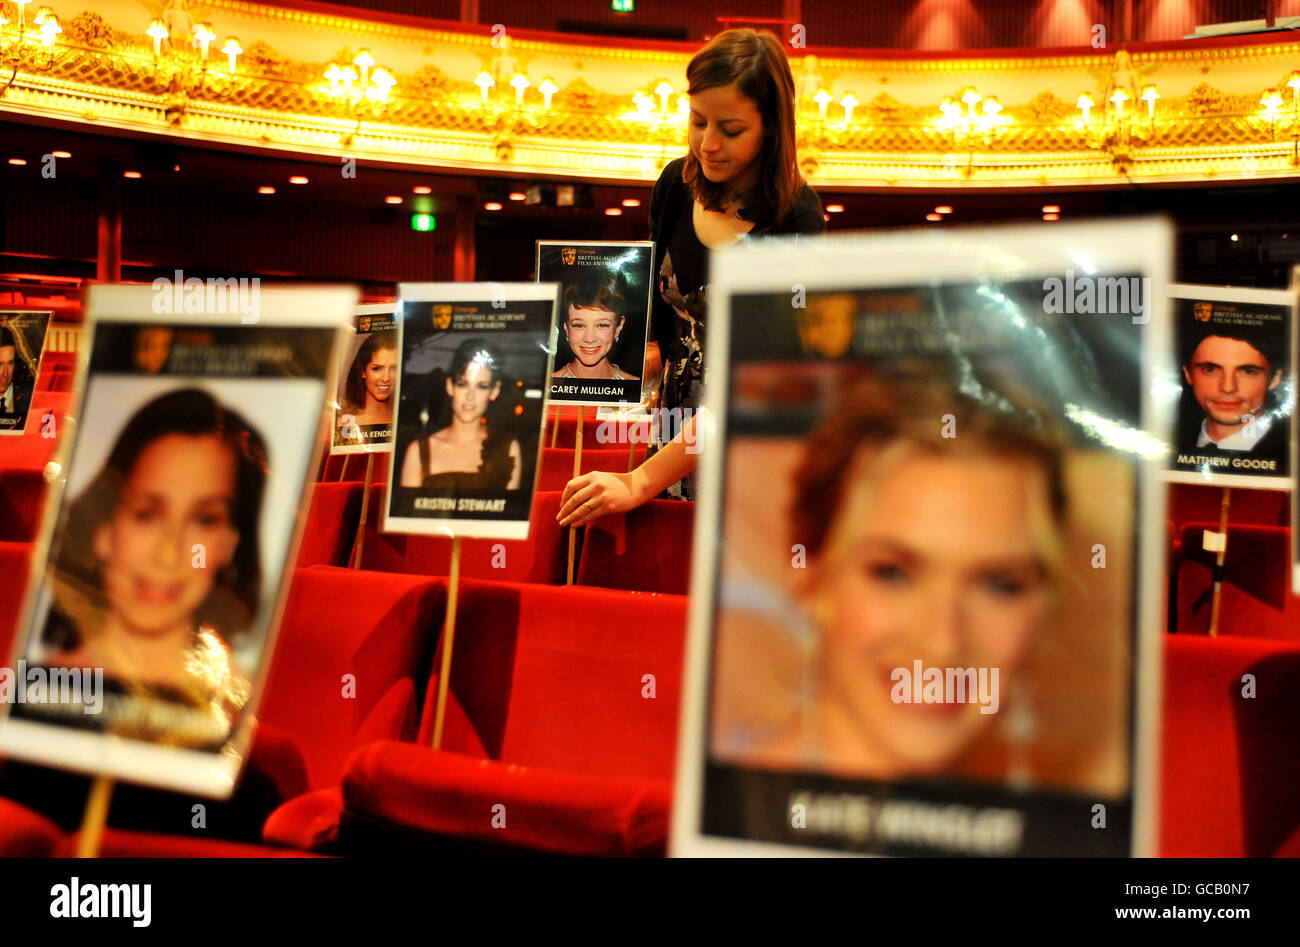 Le personnel de l'événement place des photos de stars de cinéma qui assistent à la cérémonie de remise des prix de la BAFTA (British Academy of film and Television Arts) ce week-end dans l'auditorium de l'Opéra Royal, dans le centre de Londres. Banque D'Images